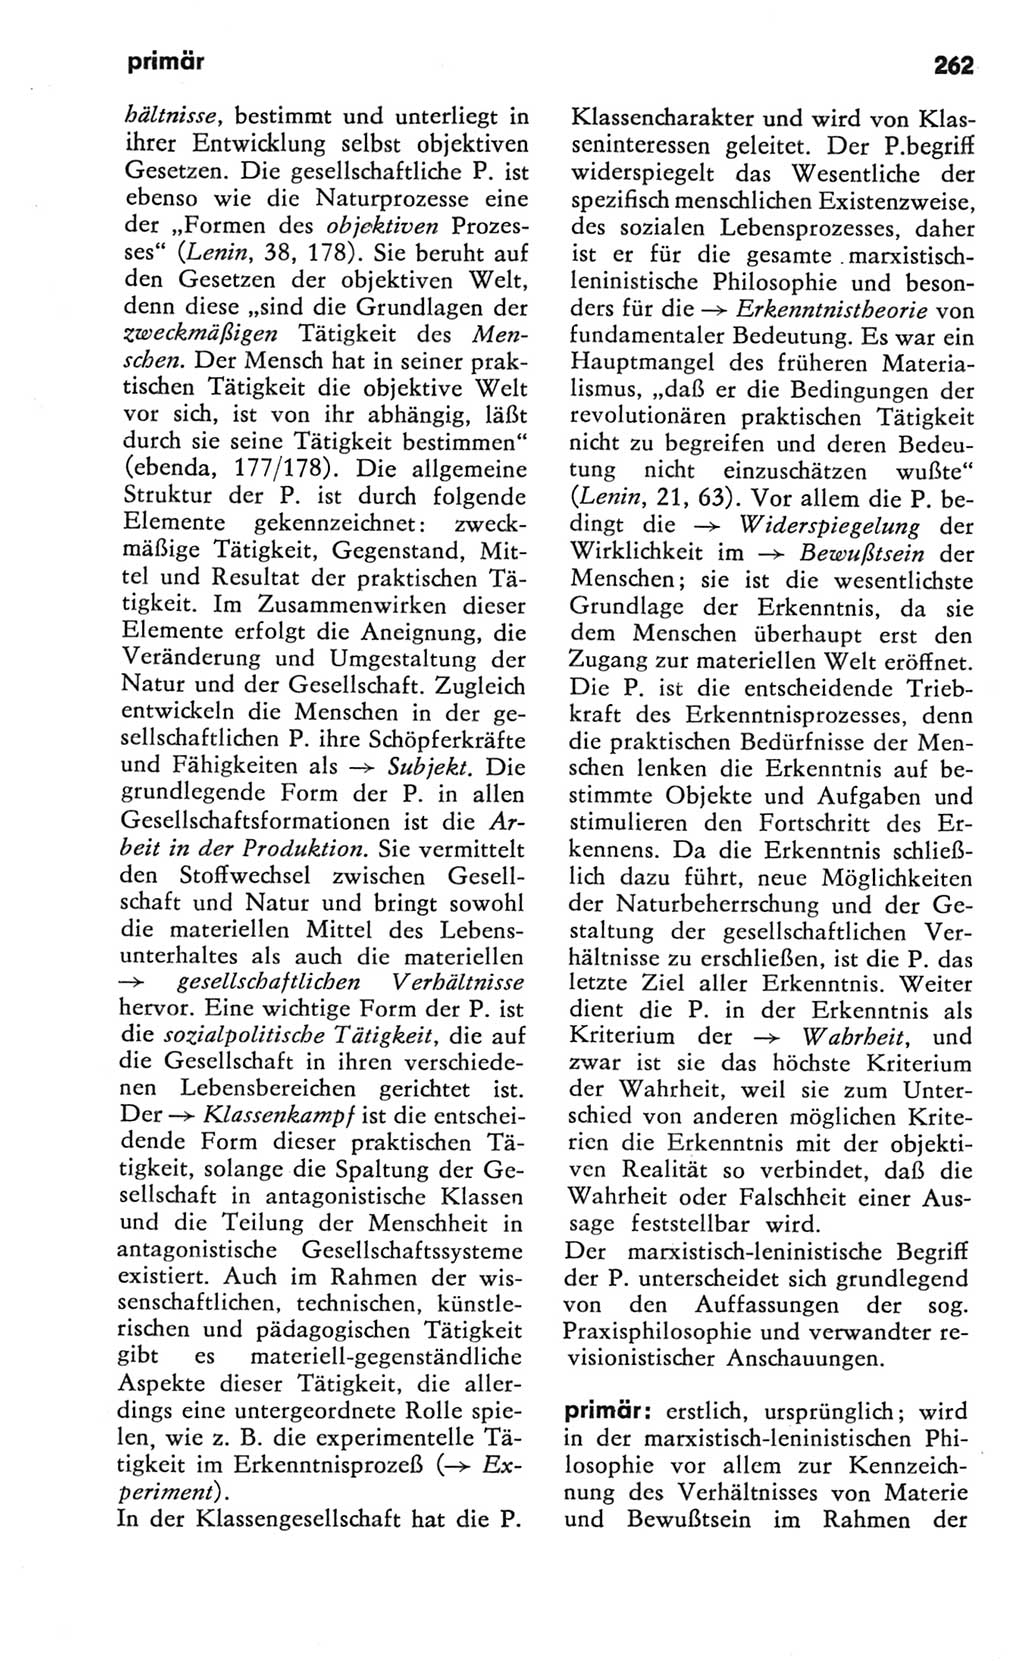 Kleines Wörterbuch der marxistisch-leninistischen Philosophie [Deutsche Demokratische Republik (DDR)] 1981, Seite 262 (Kl. Wb. ML Phil. DDR 1981, S. 262)